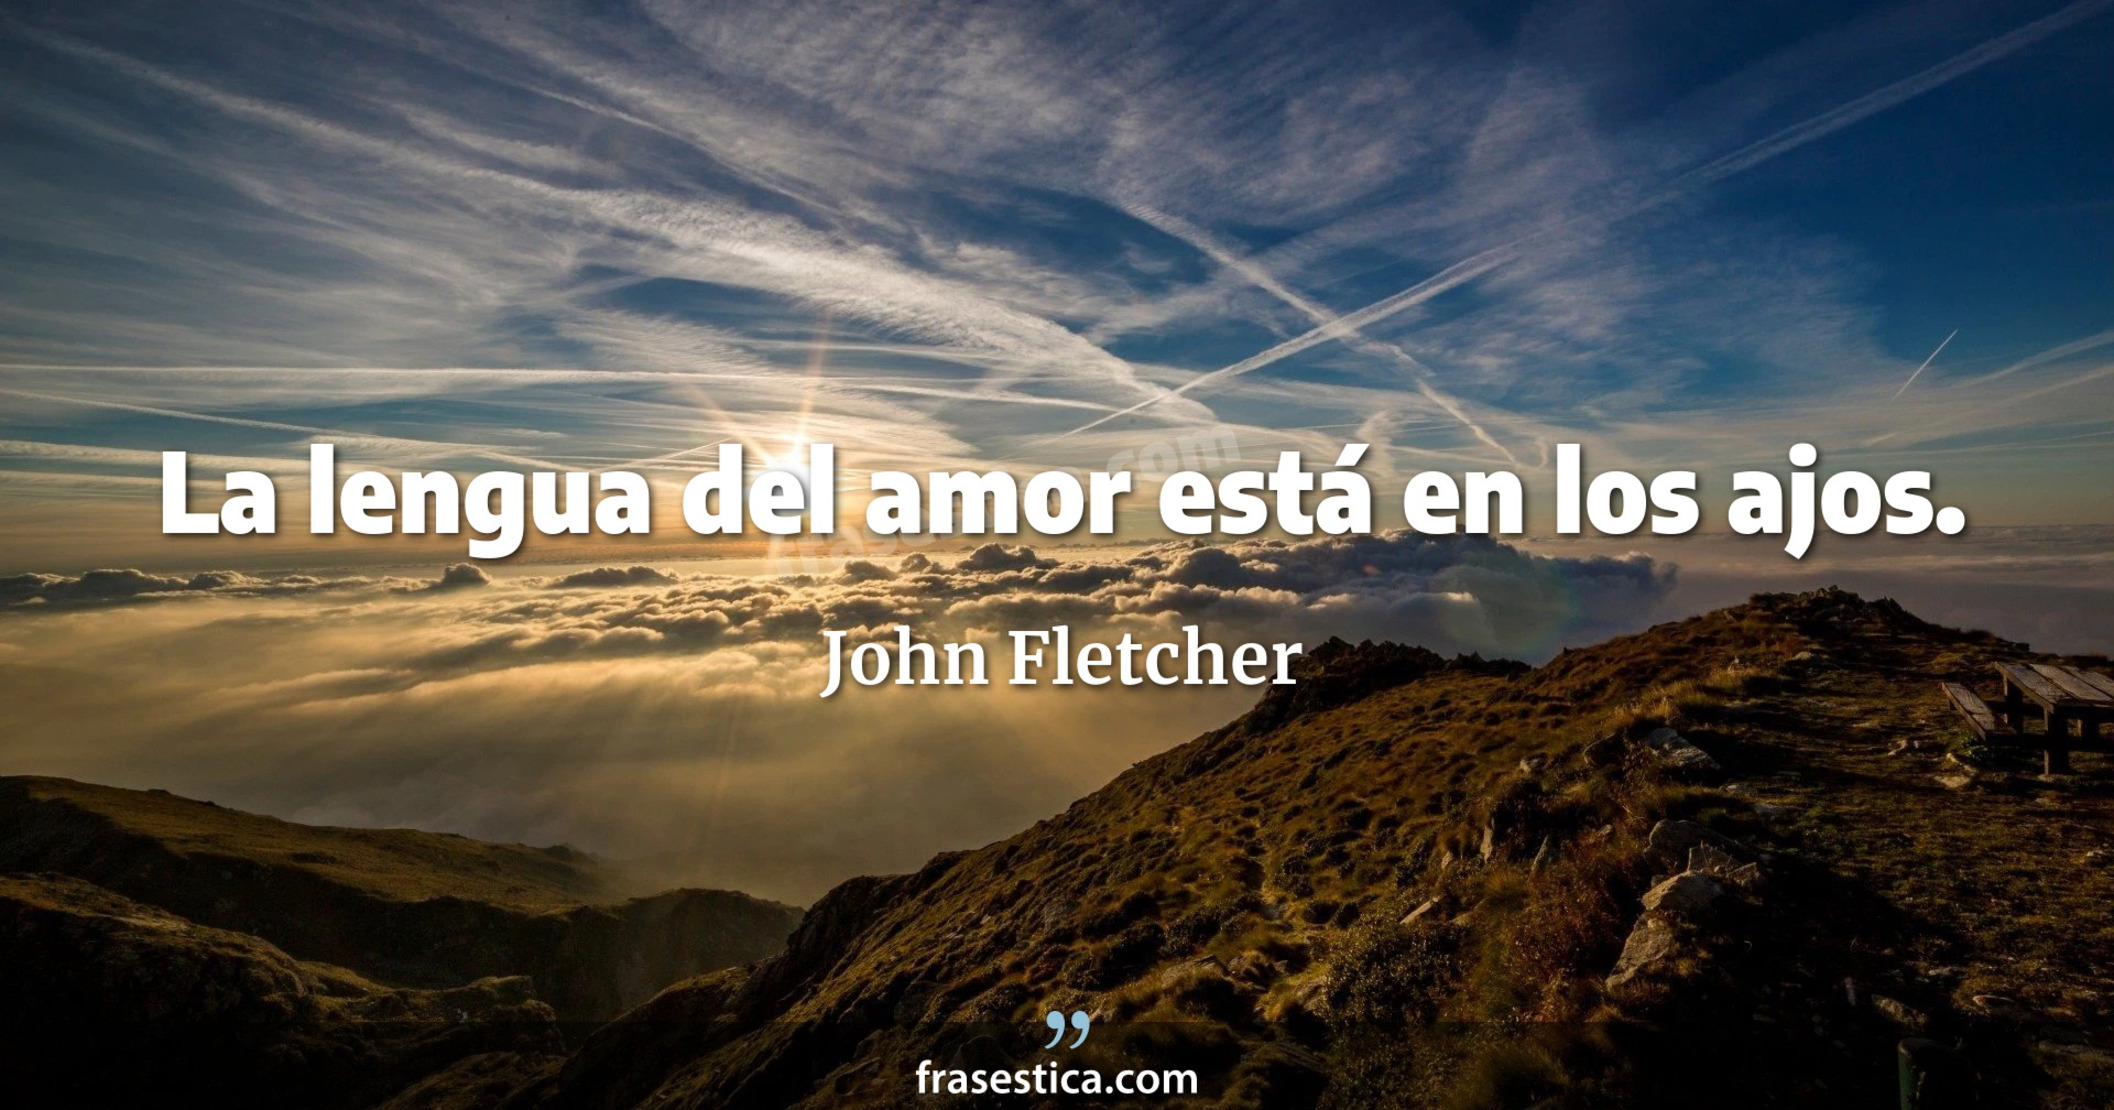 La lengua del amor está en los ajos. - John Fletcher